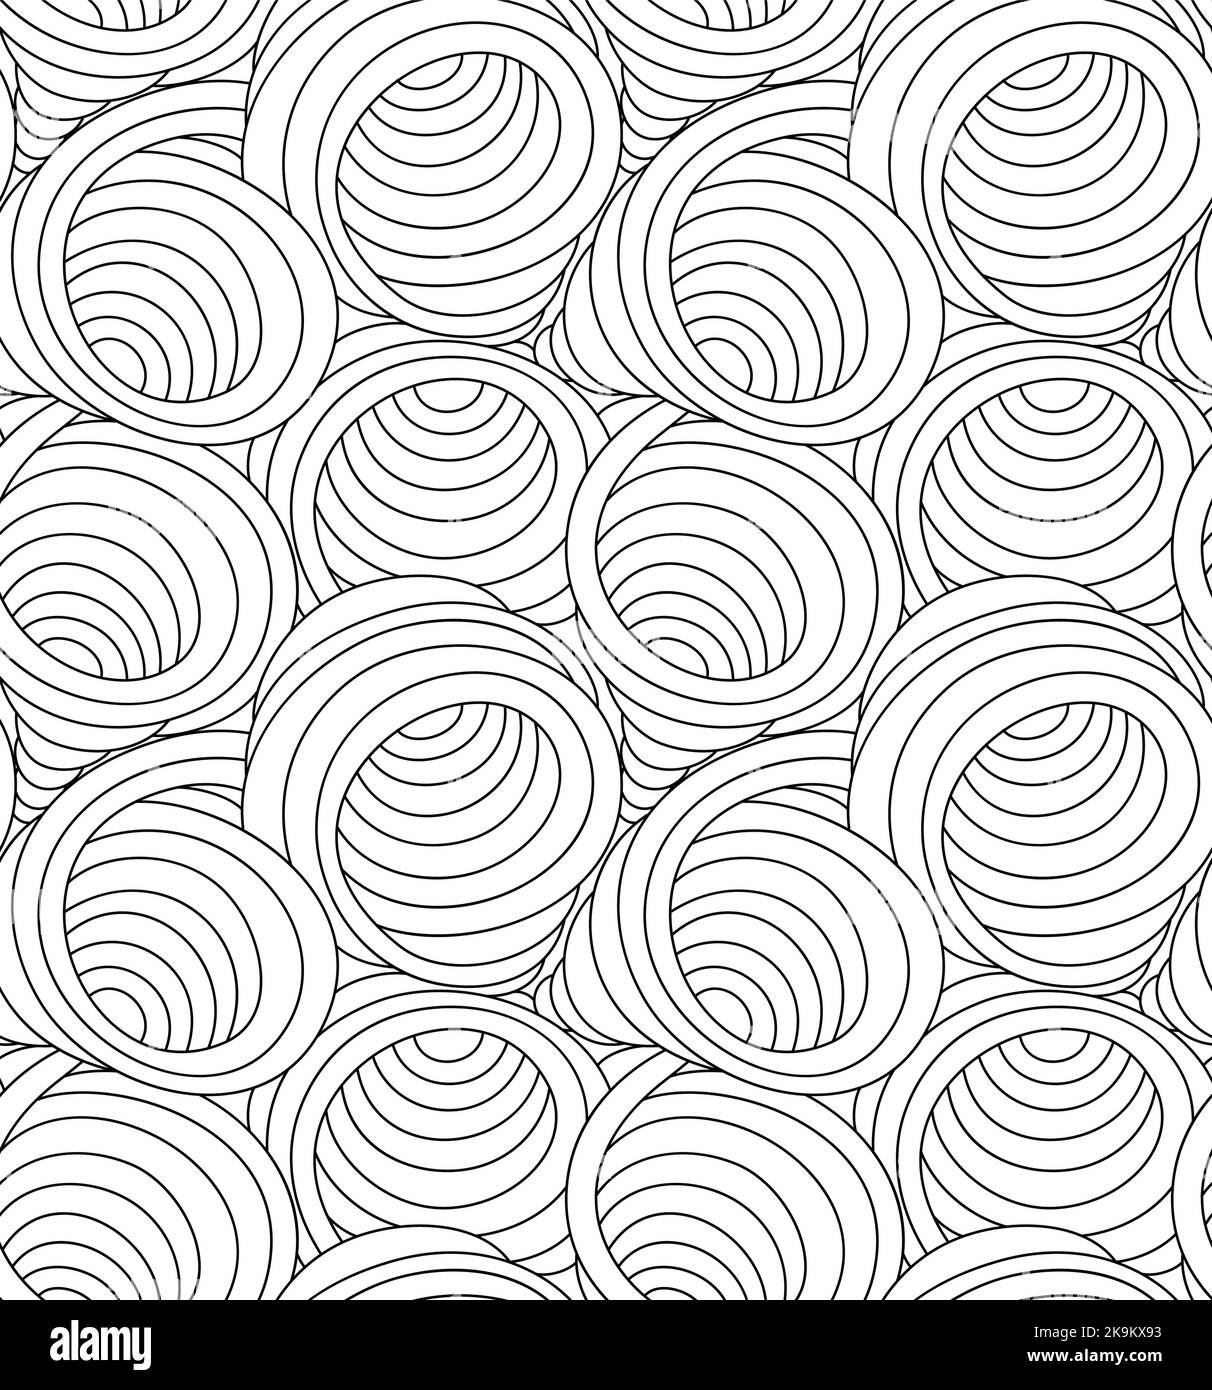 Pattern vettoriale monocromatico senza cuciture di vortici e forme astratte disegnate con linee sottili. Texture vettoriale senza giunture in forme d'onda o flusso di colore nero. Illustrazione Vettoriale